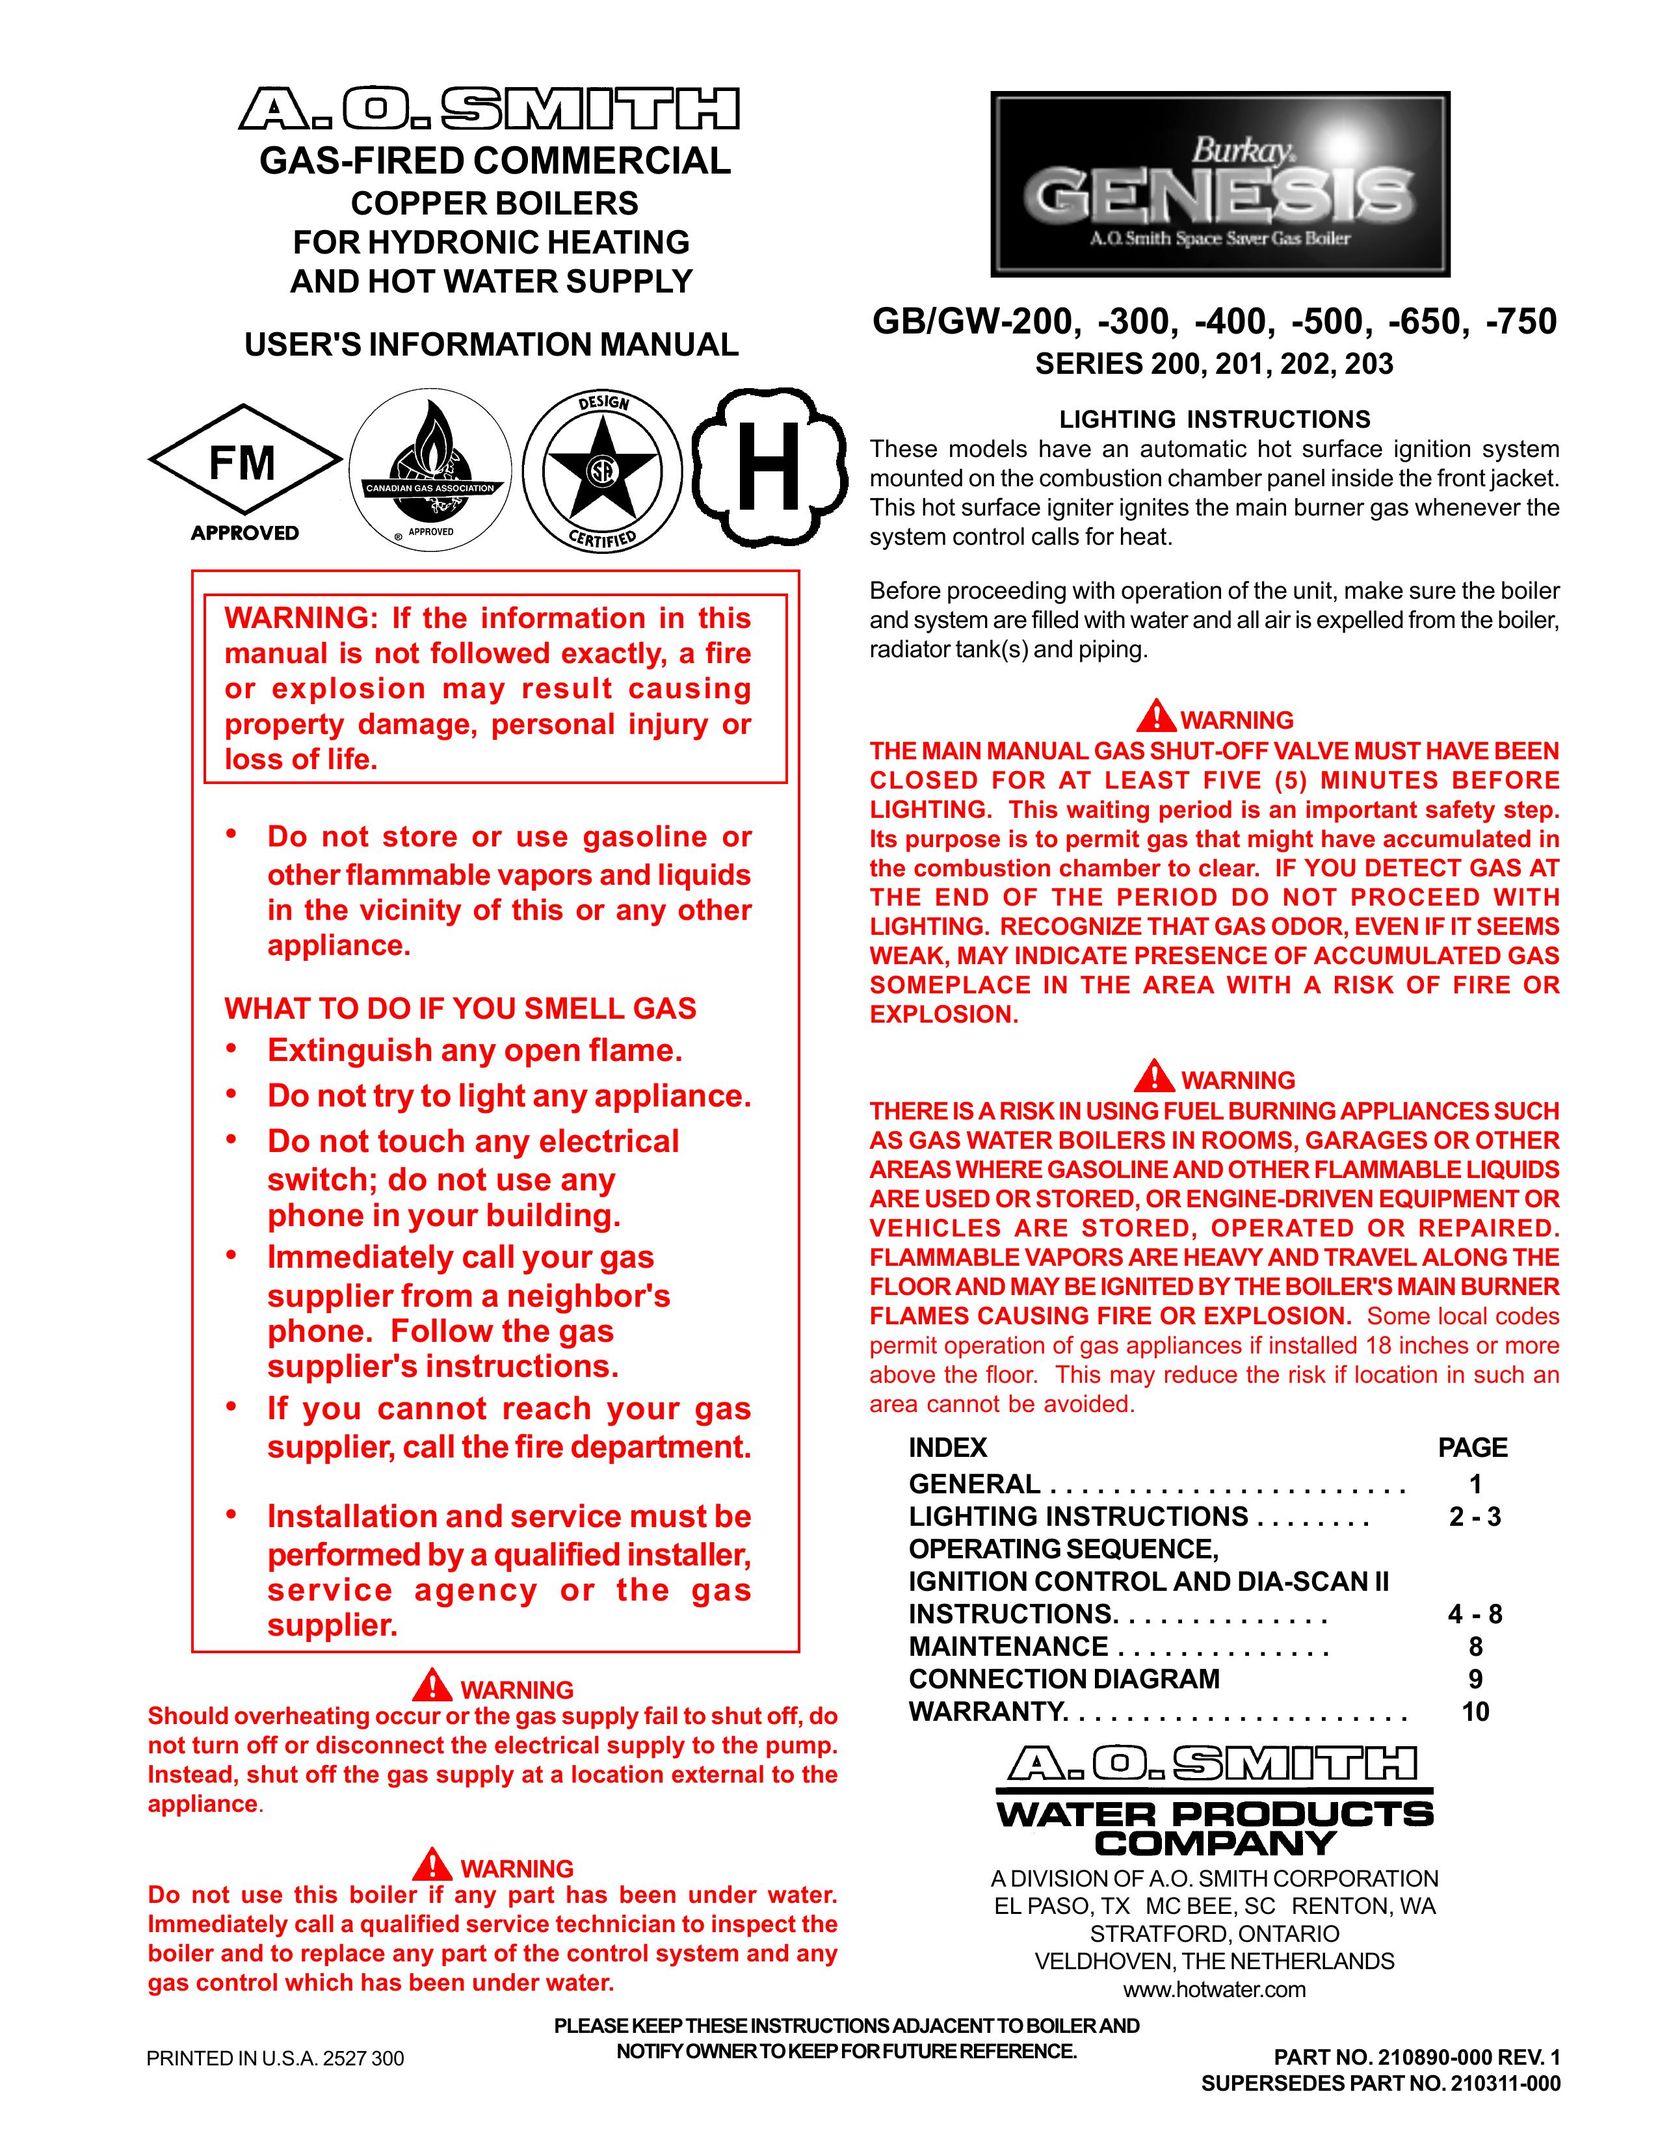 A.O. Smith GB/GW-400 Boiler User Manual (Page 1)